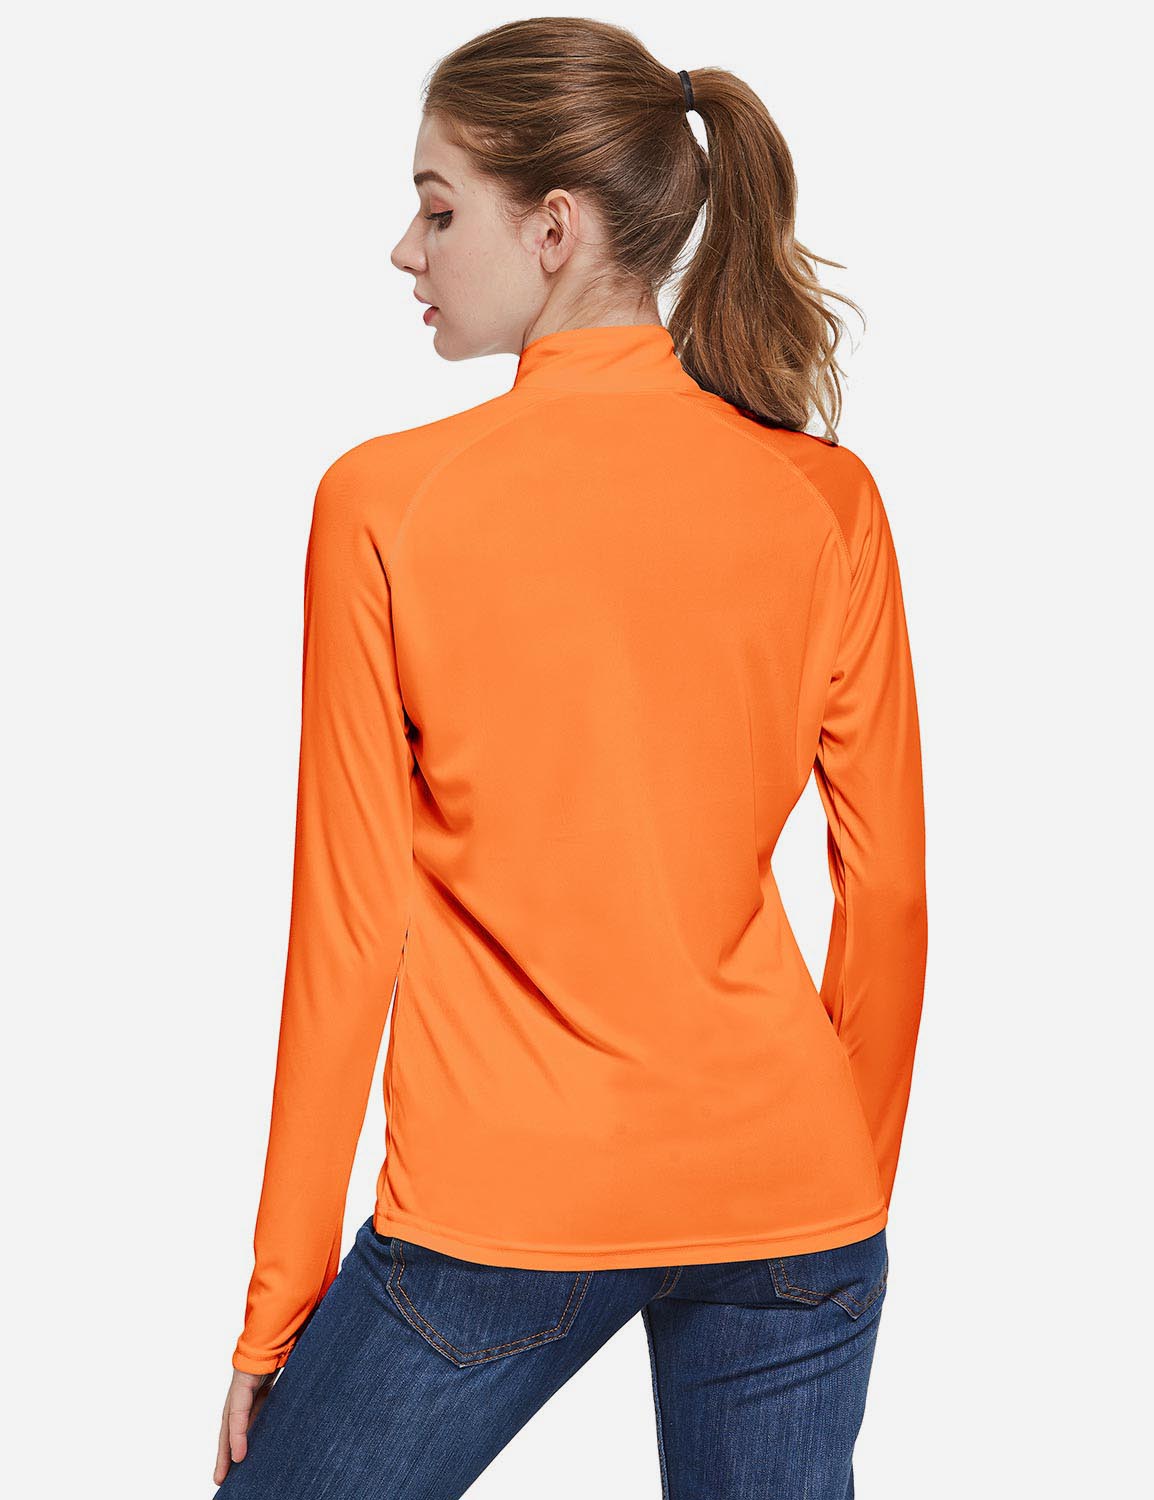 Baleaf Women's UP50+ Collared Long Sleeved Tshirt w Thumbholes aga065 Orange Back